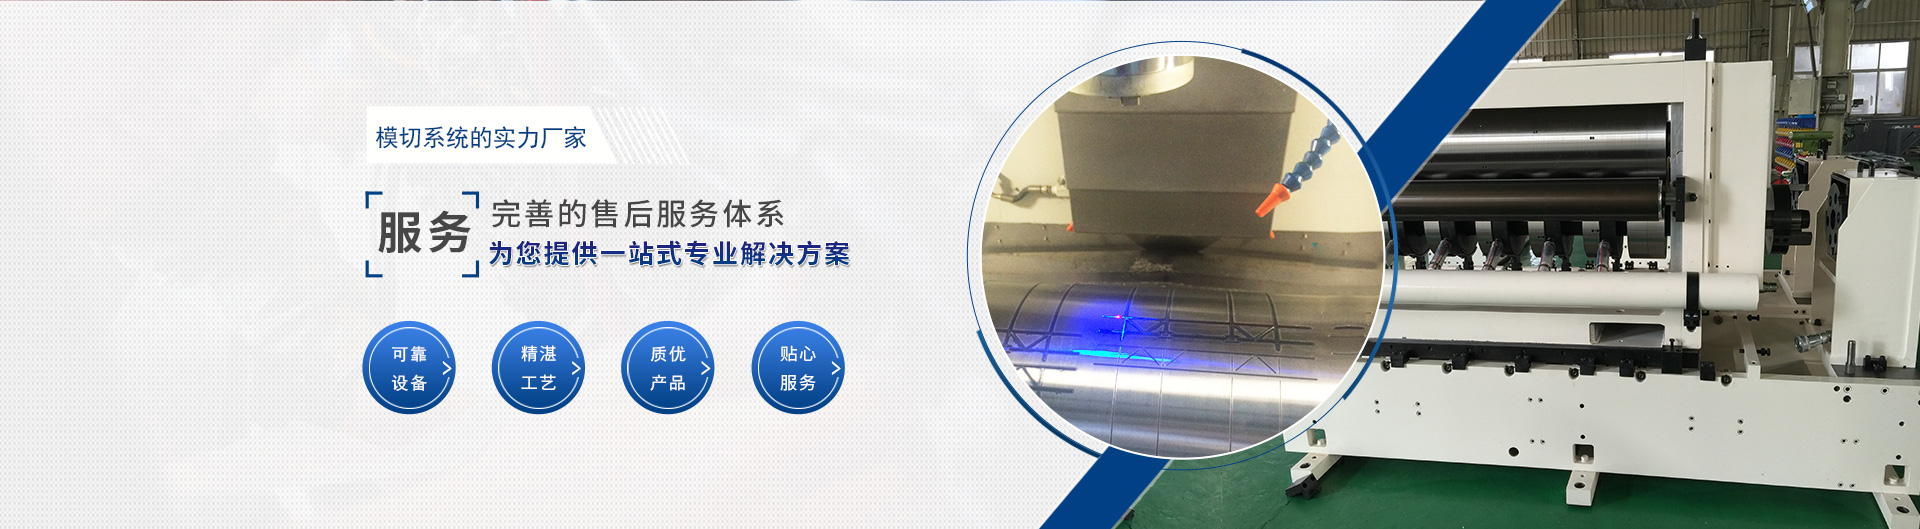 上海宗力印刷包装机械有限公司